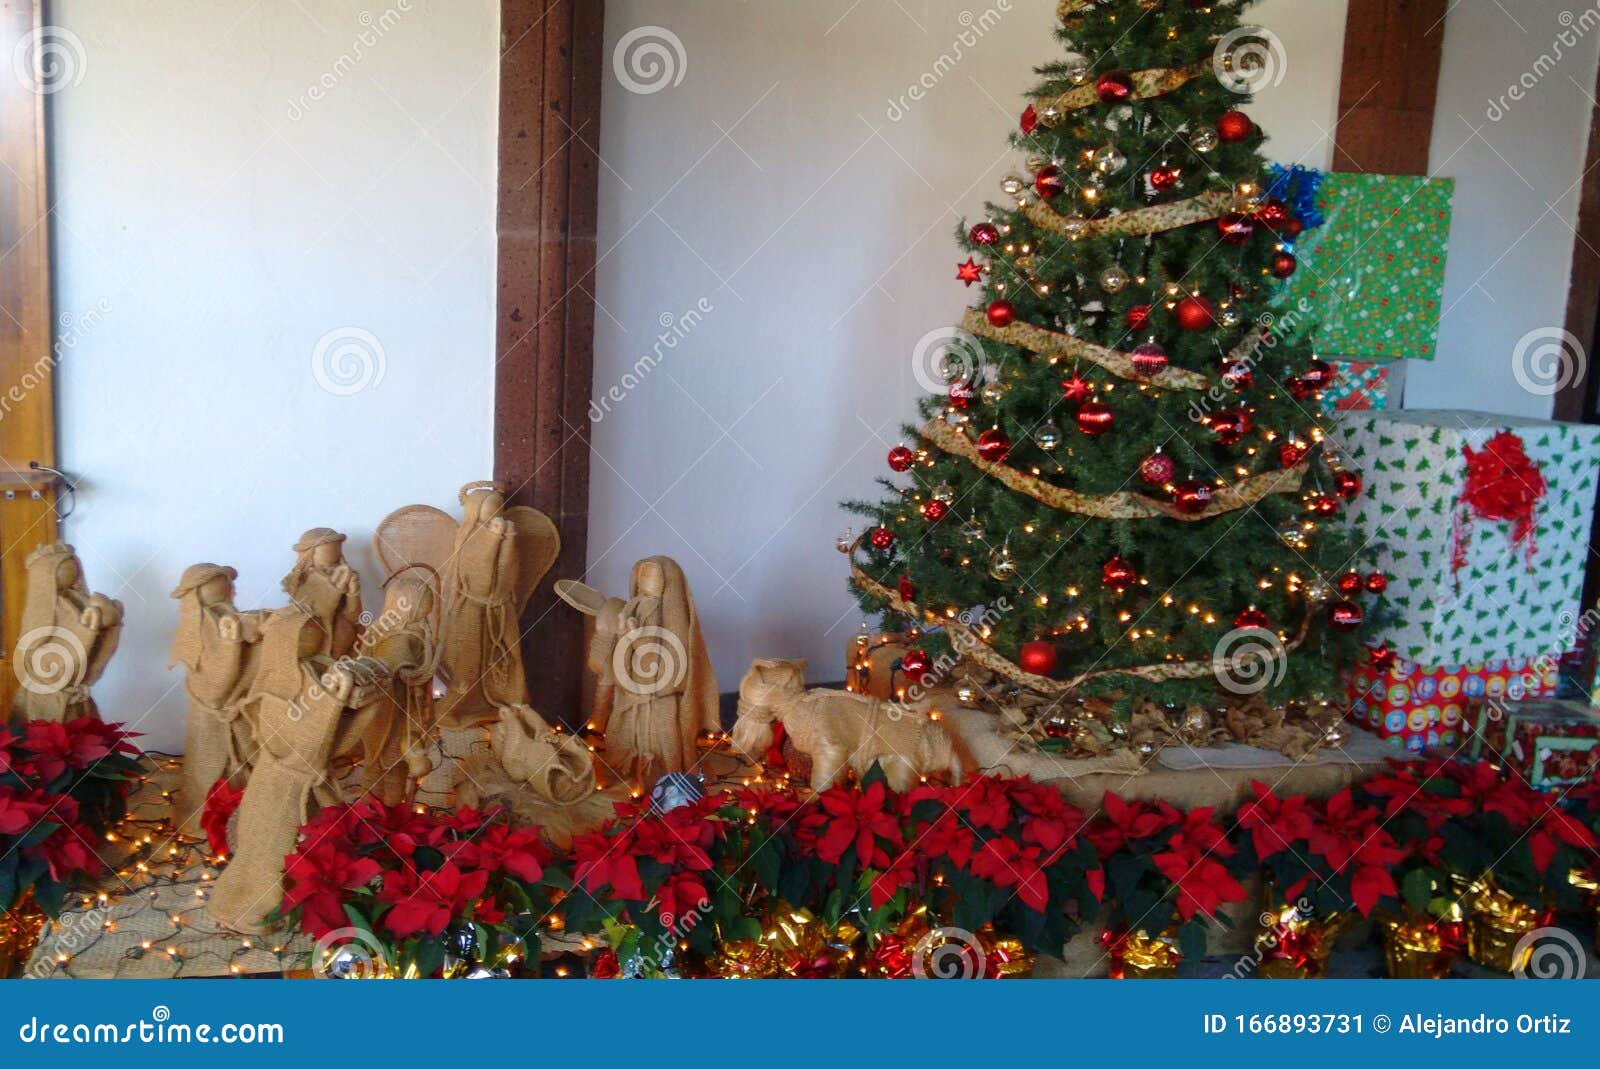 Nacimiento Con Arbol De Navidad Y Nochebuenas Stock Image - Image of  nochebuenas, hacienda: 166893731